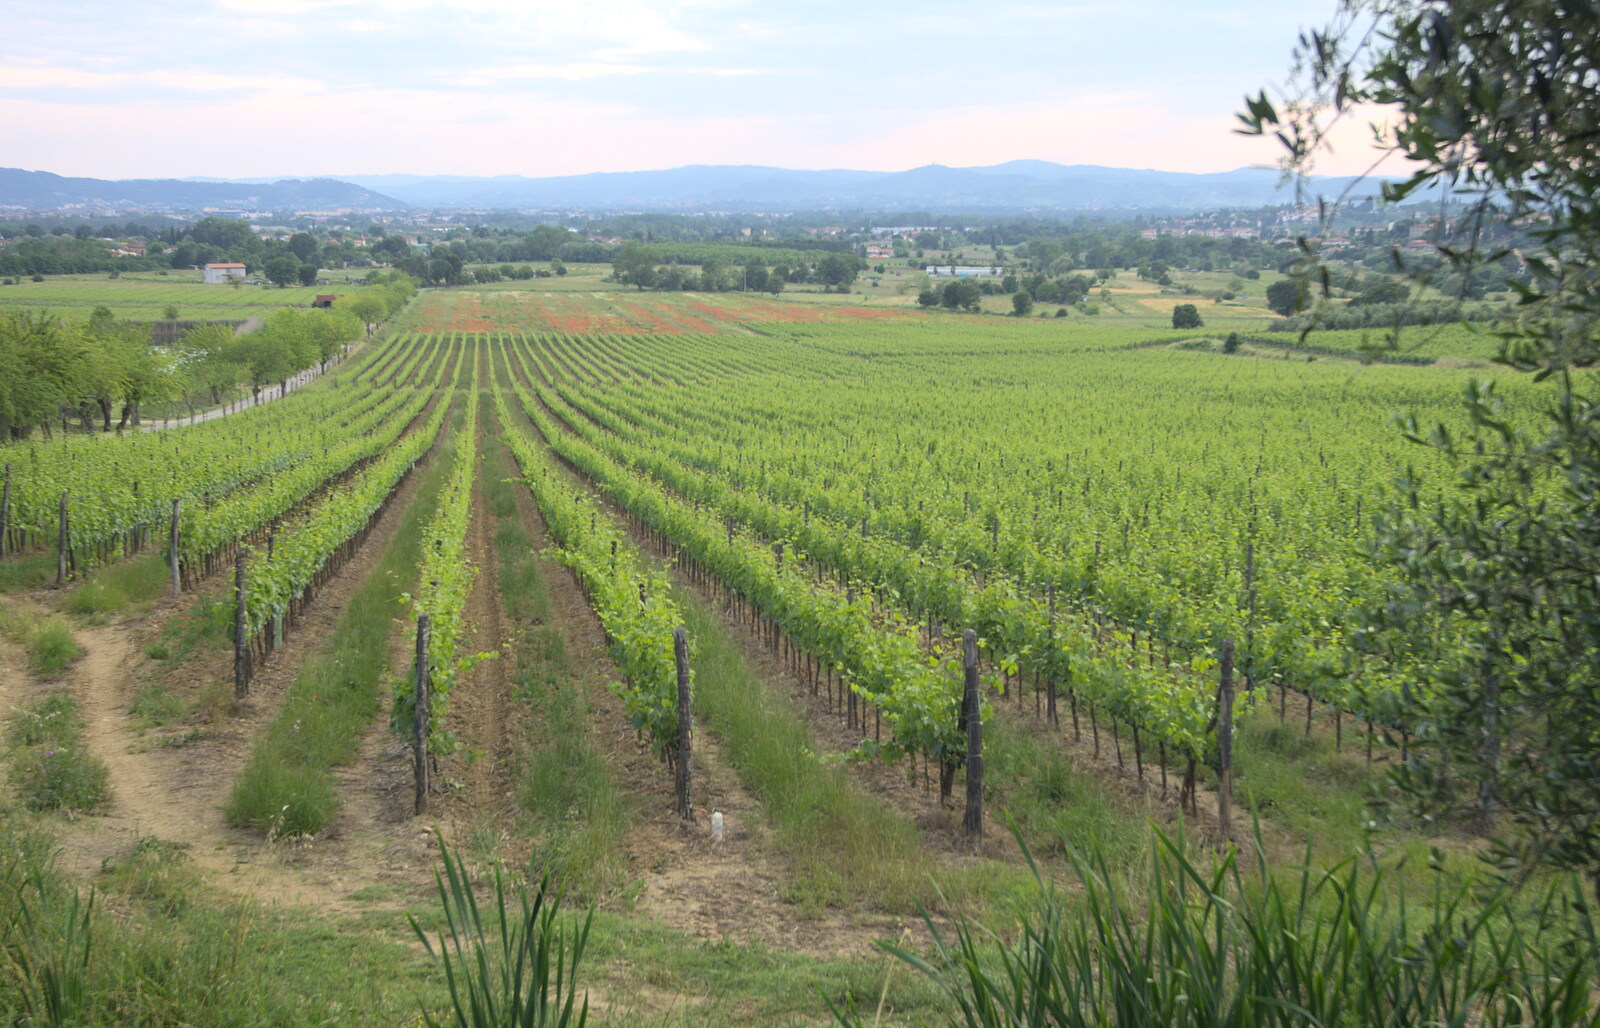 Marconi, Arezzo and the Sagra del Maccherone Festival, Battifolle, Tuscany - 9th June 2013: Part of Tenuta Il Palazzo's 500 hectares of vineyard